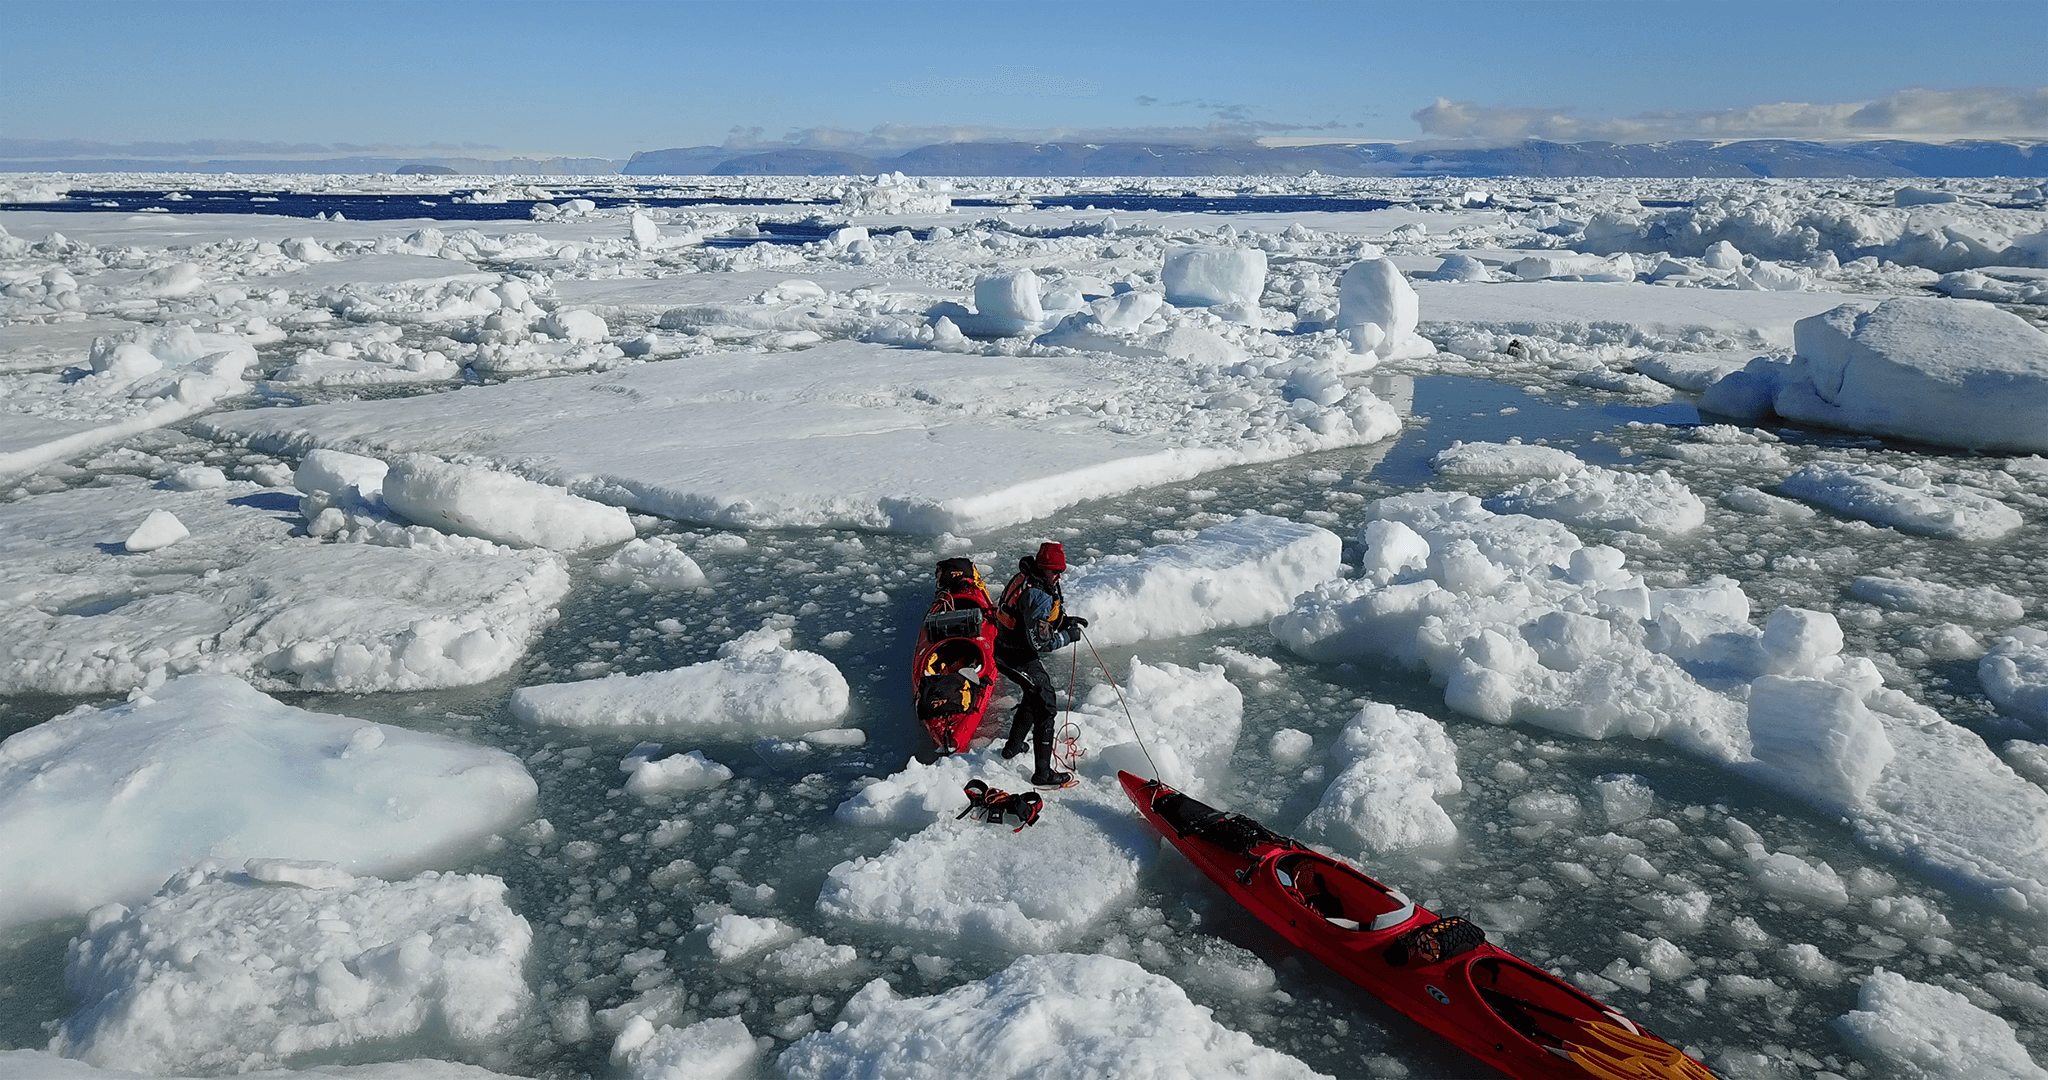 In Search of a Frozen Ocean